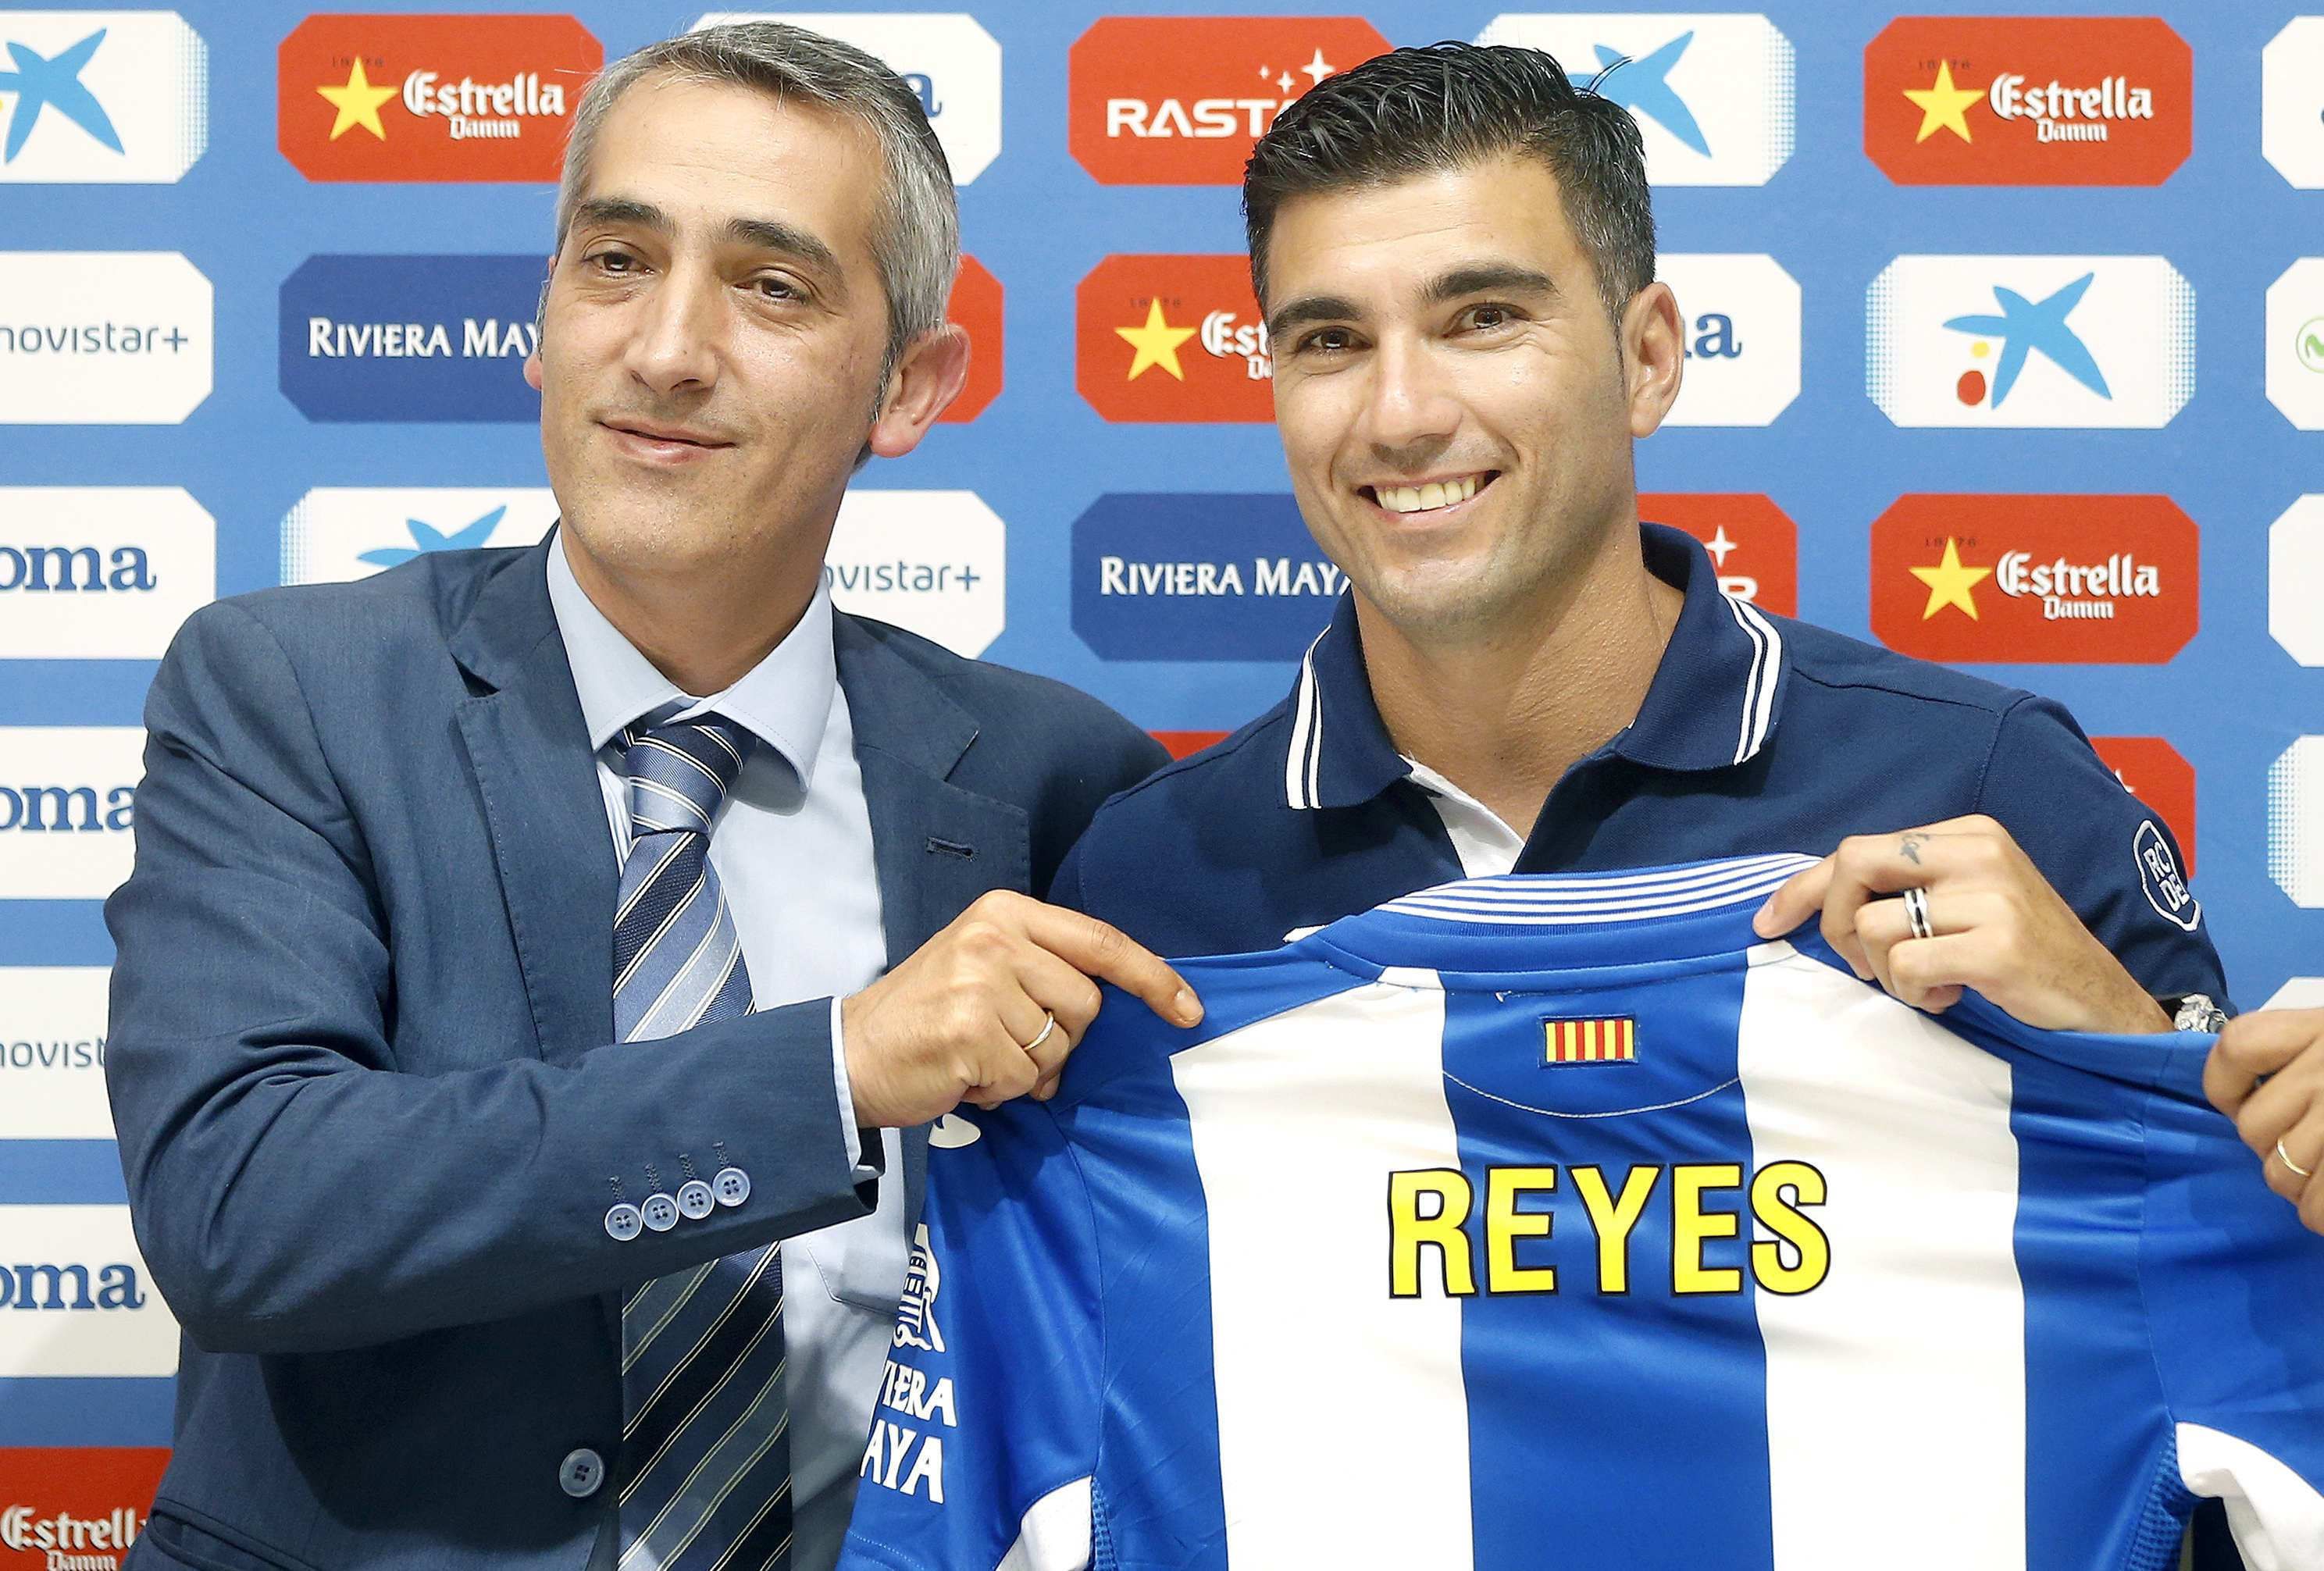 Reyes, segundo fichaje del Espanyol